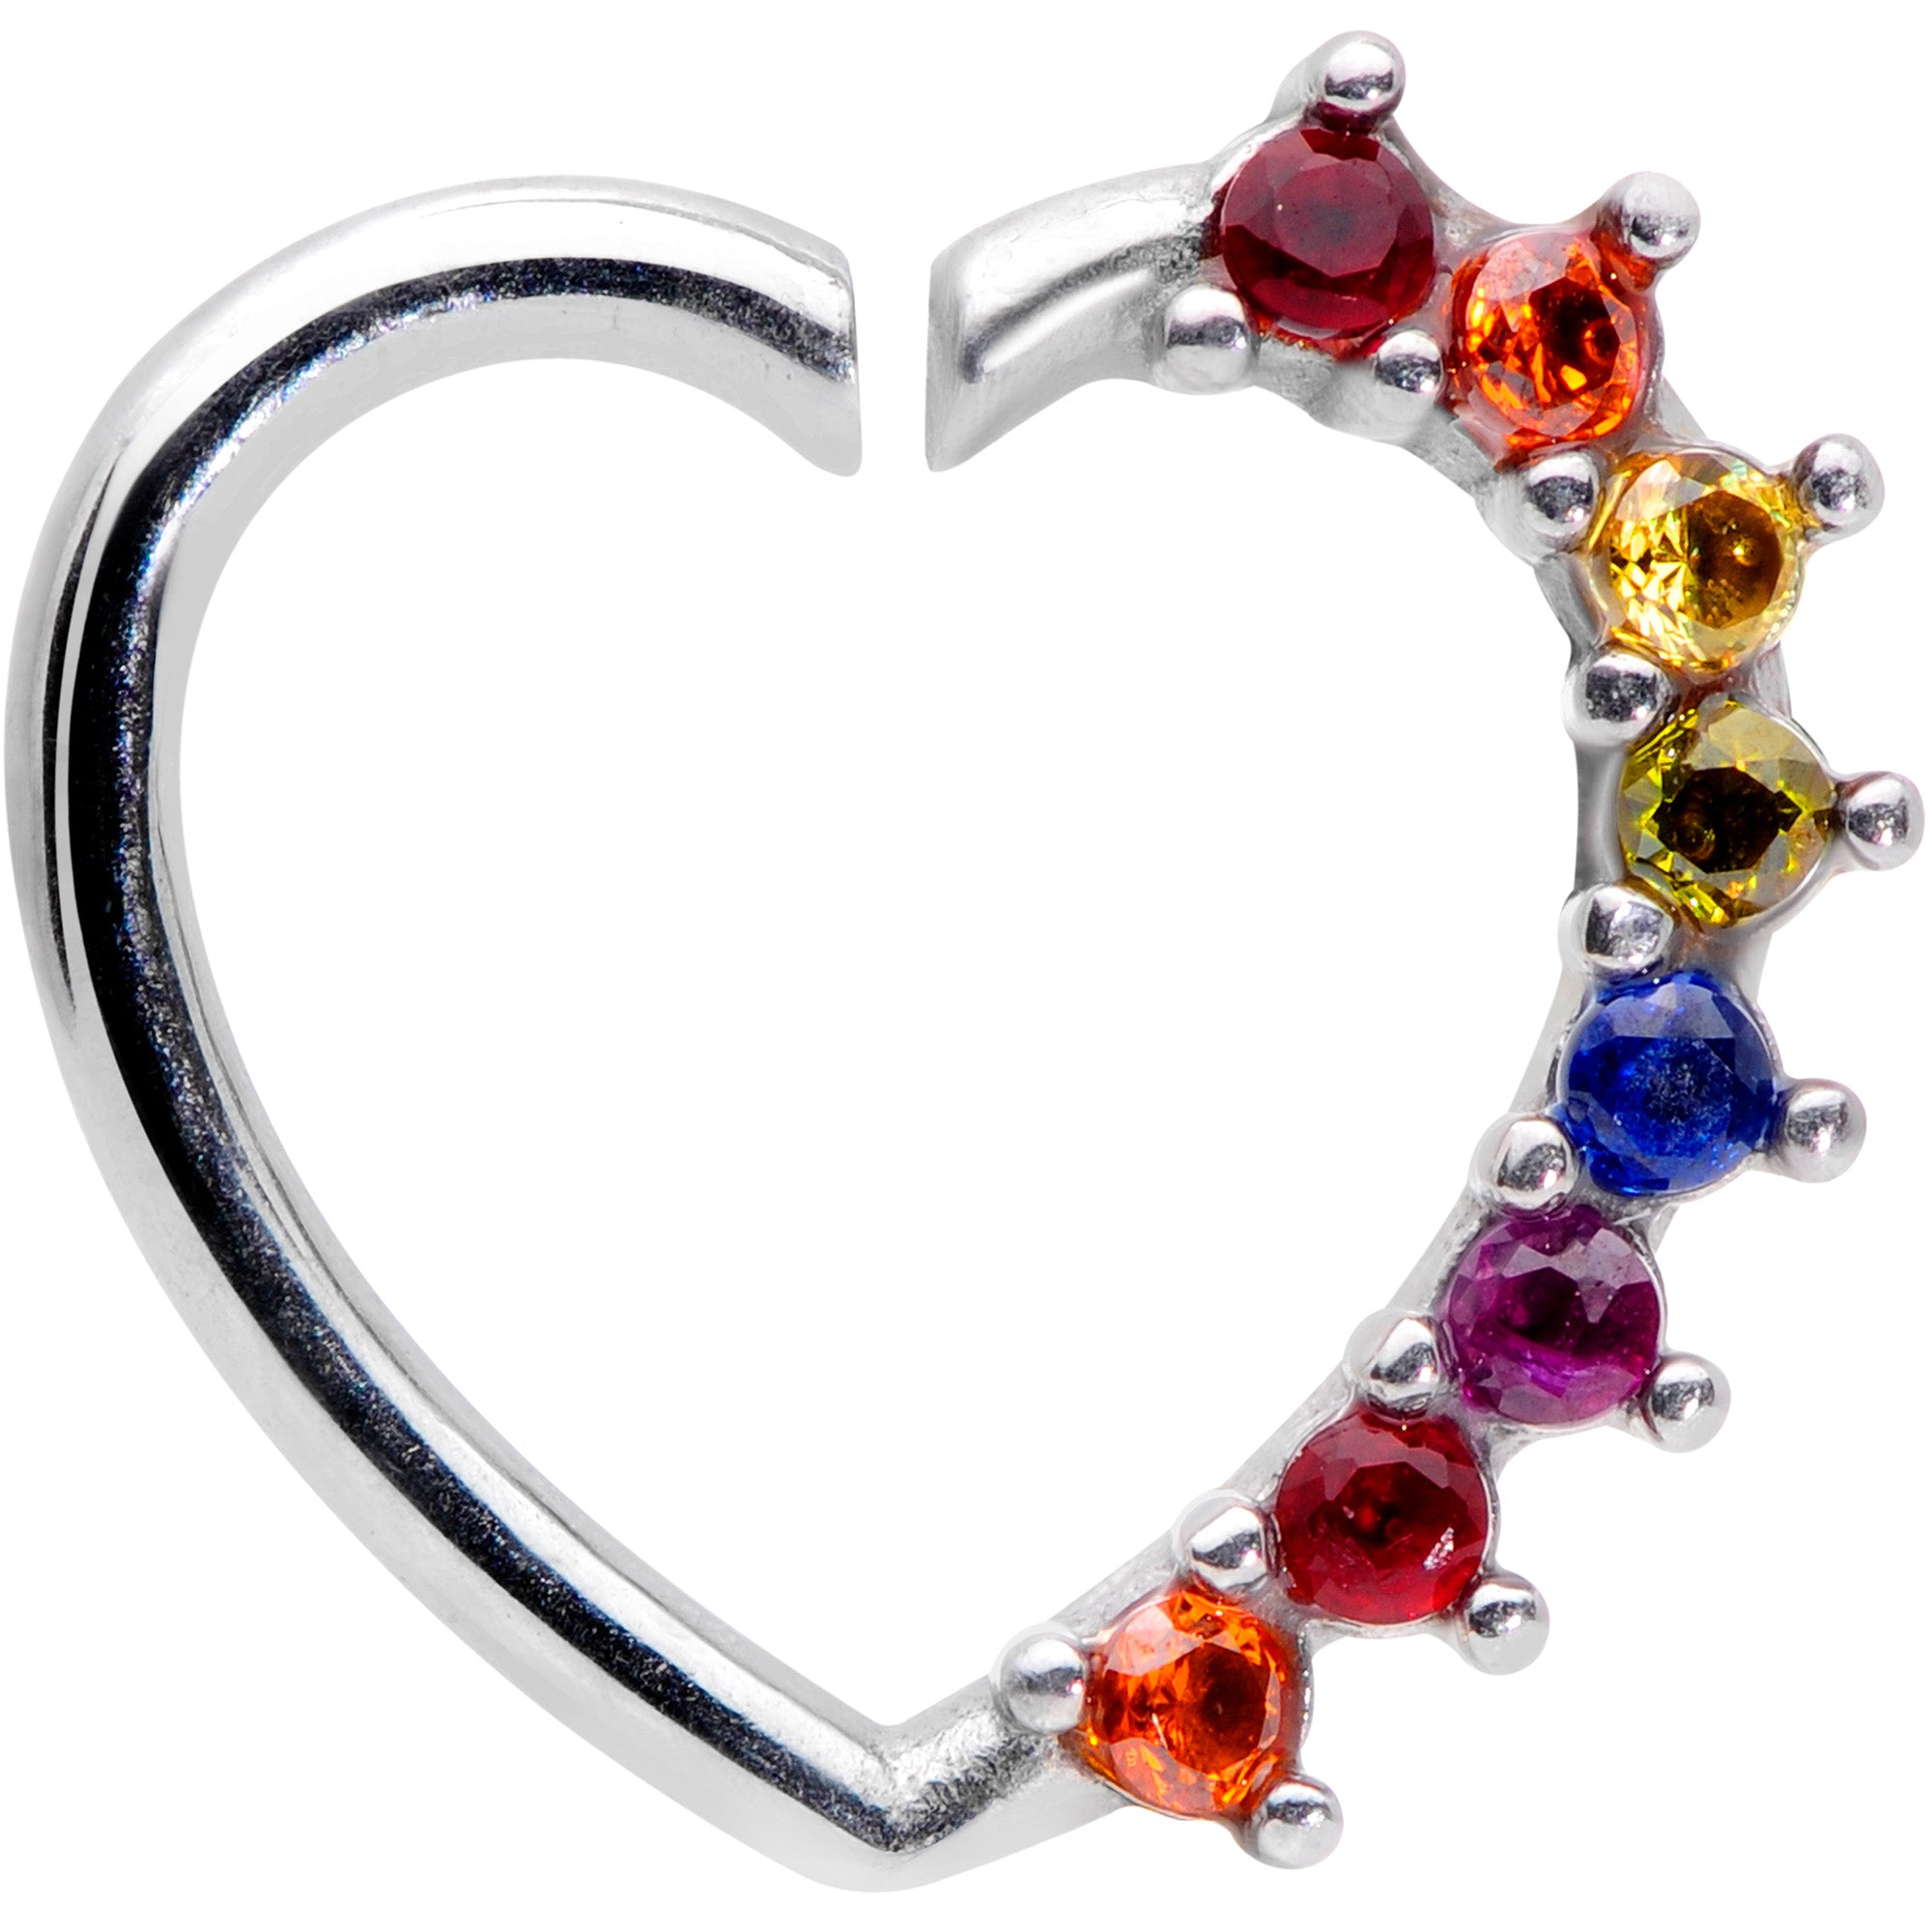 16 Gauge 5/16 Rainbow Gem Pride Heart Left Ear Closure Ring